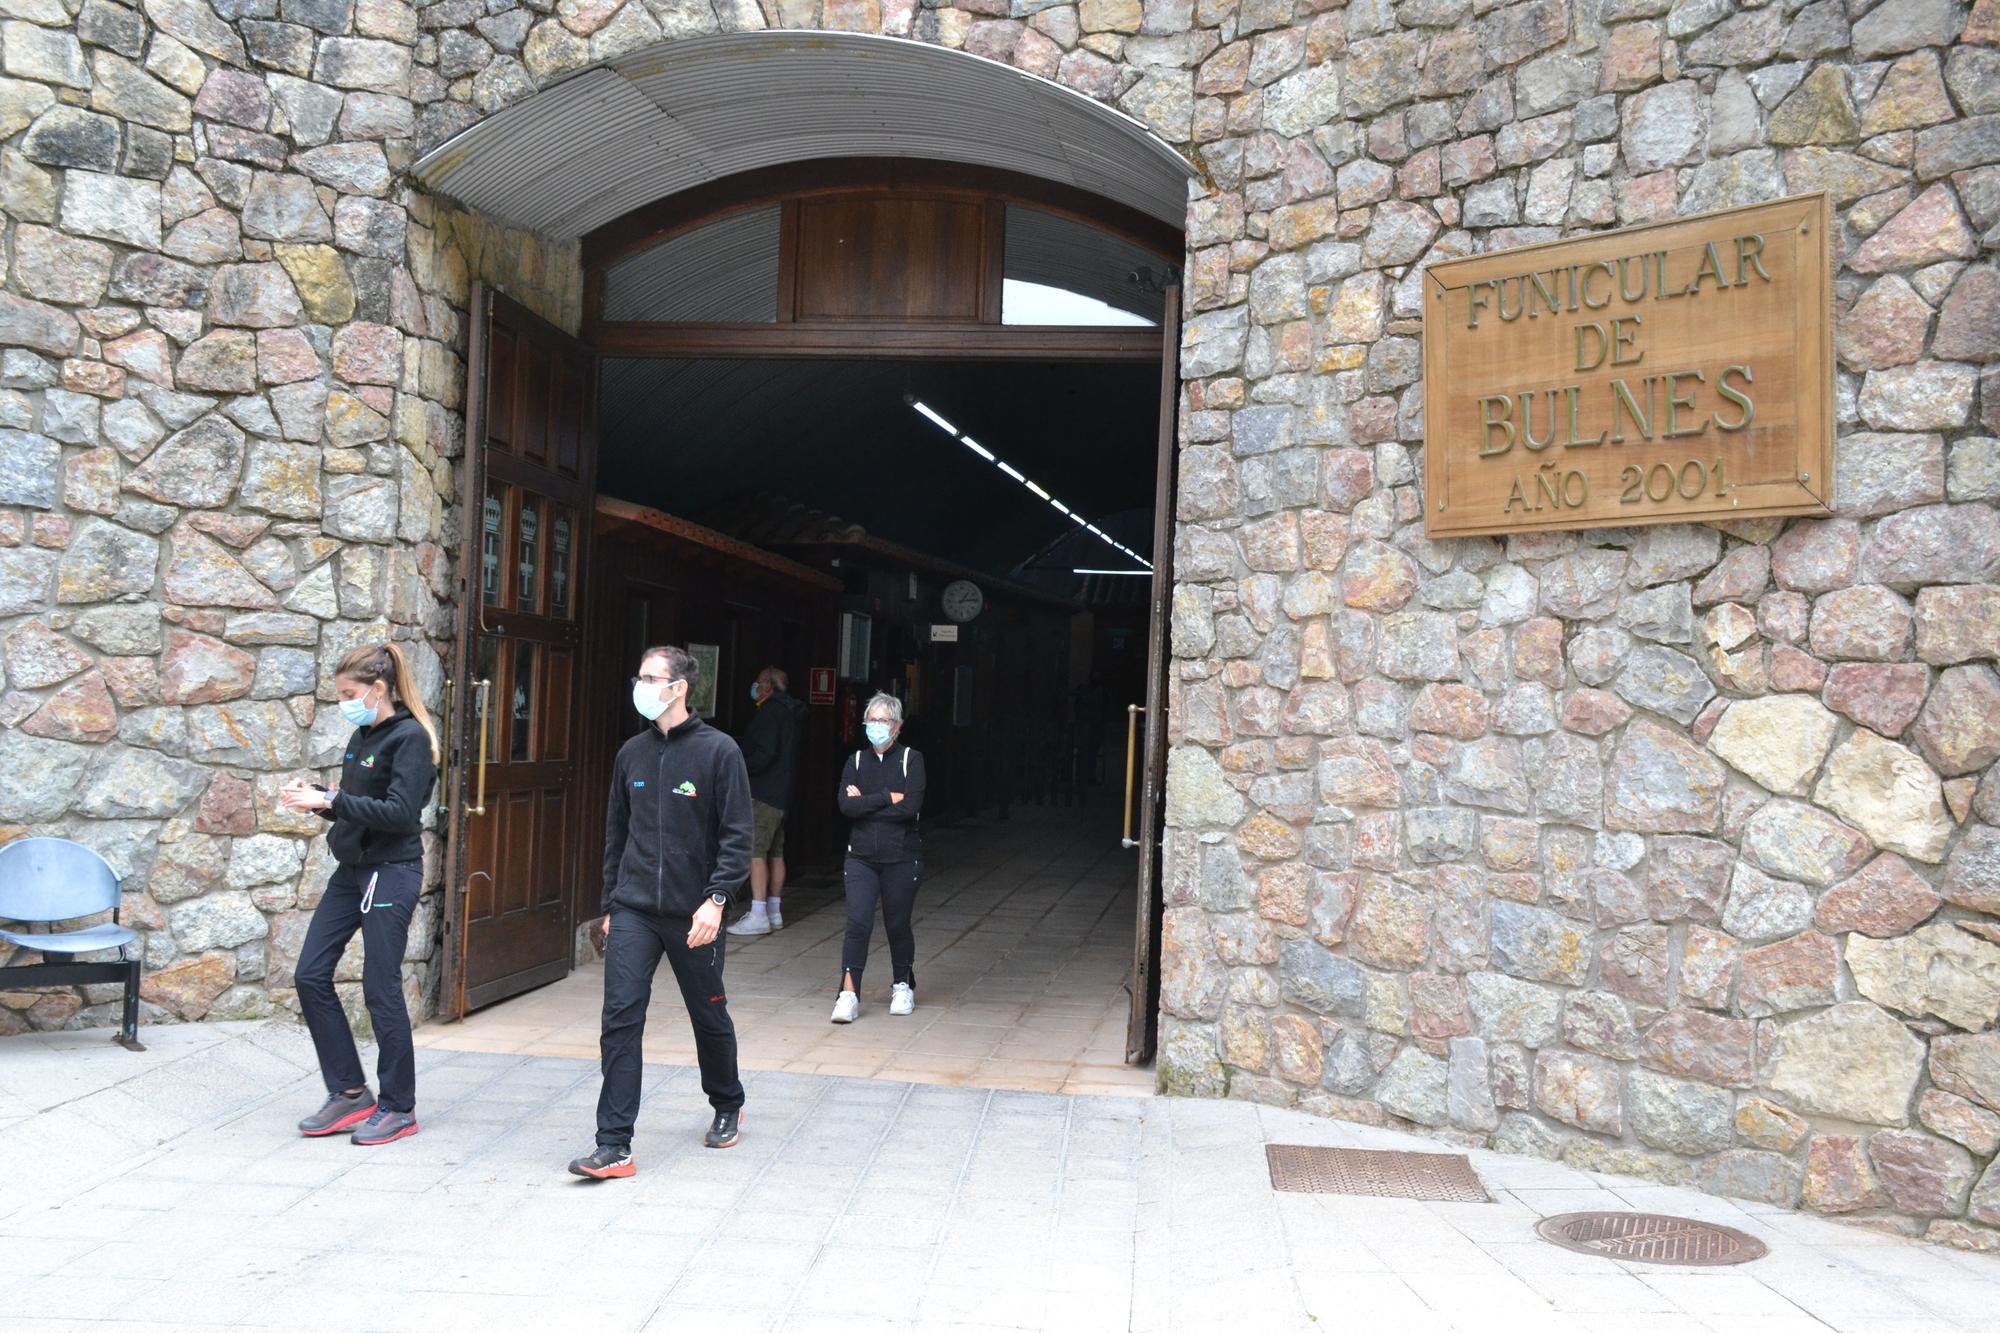 Viajeros salen de las instalaciones del funicular a Bulnes, en Poncebos.